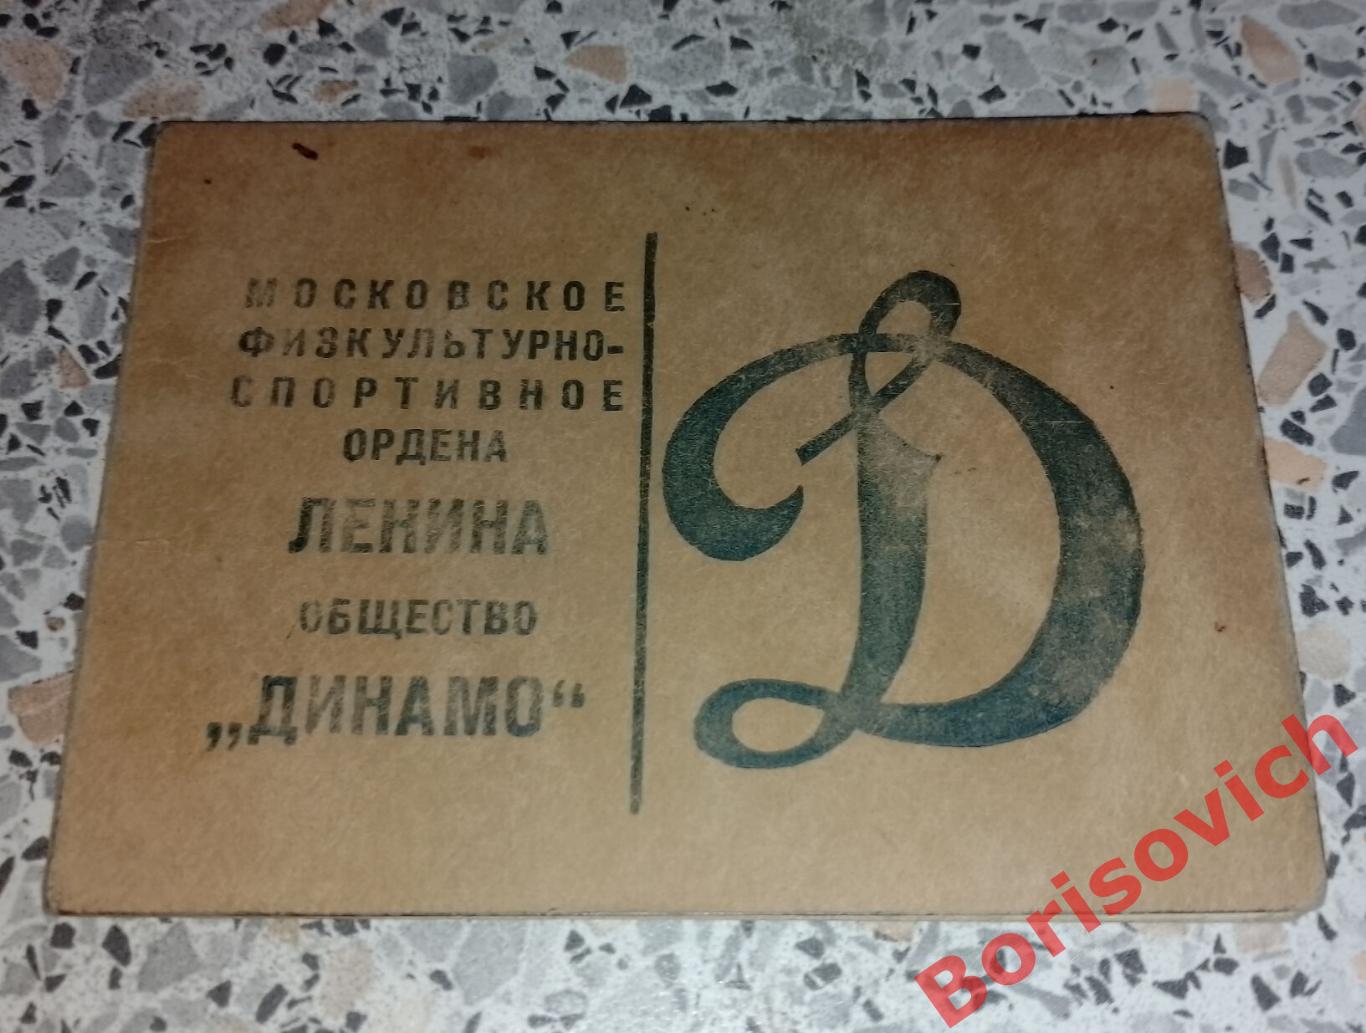 Членский билет общество Динамо 1949 г